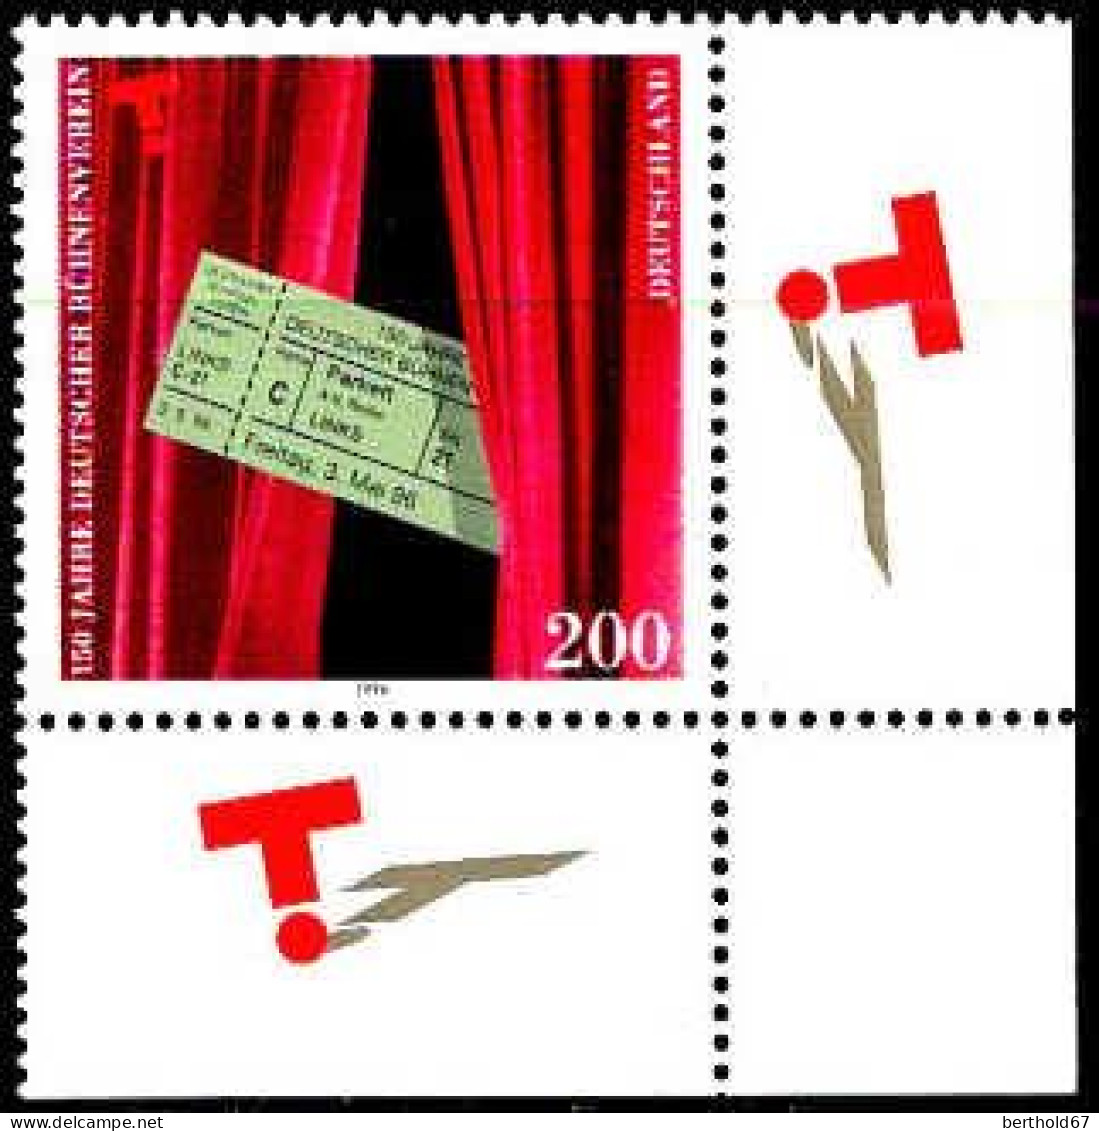 RFA Poste N** Yv:1689 Mi:1857 150.Jahre Deutscher Bühnenverein Coin D.feuille (Thème) - Teatro